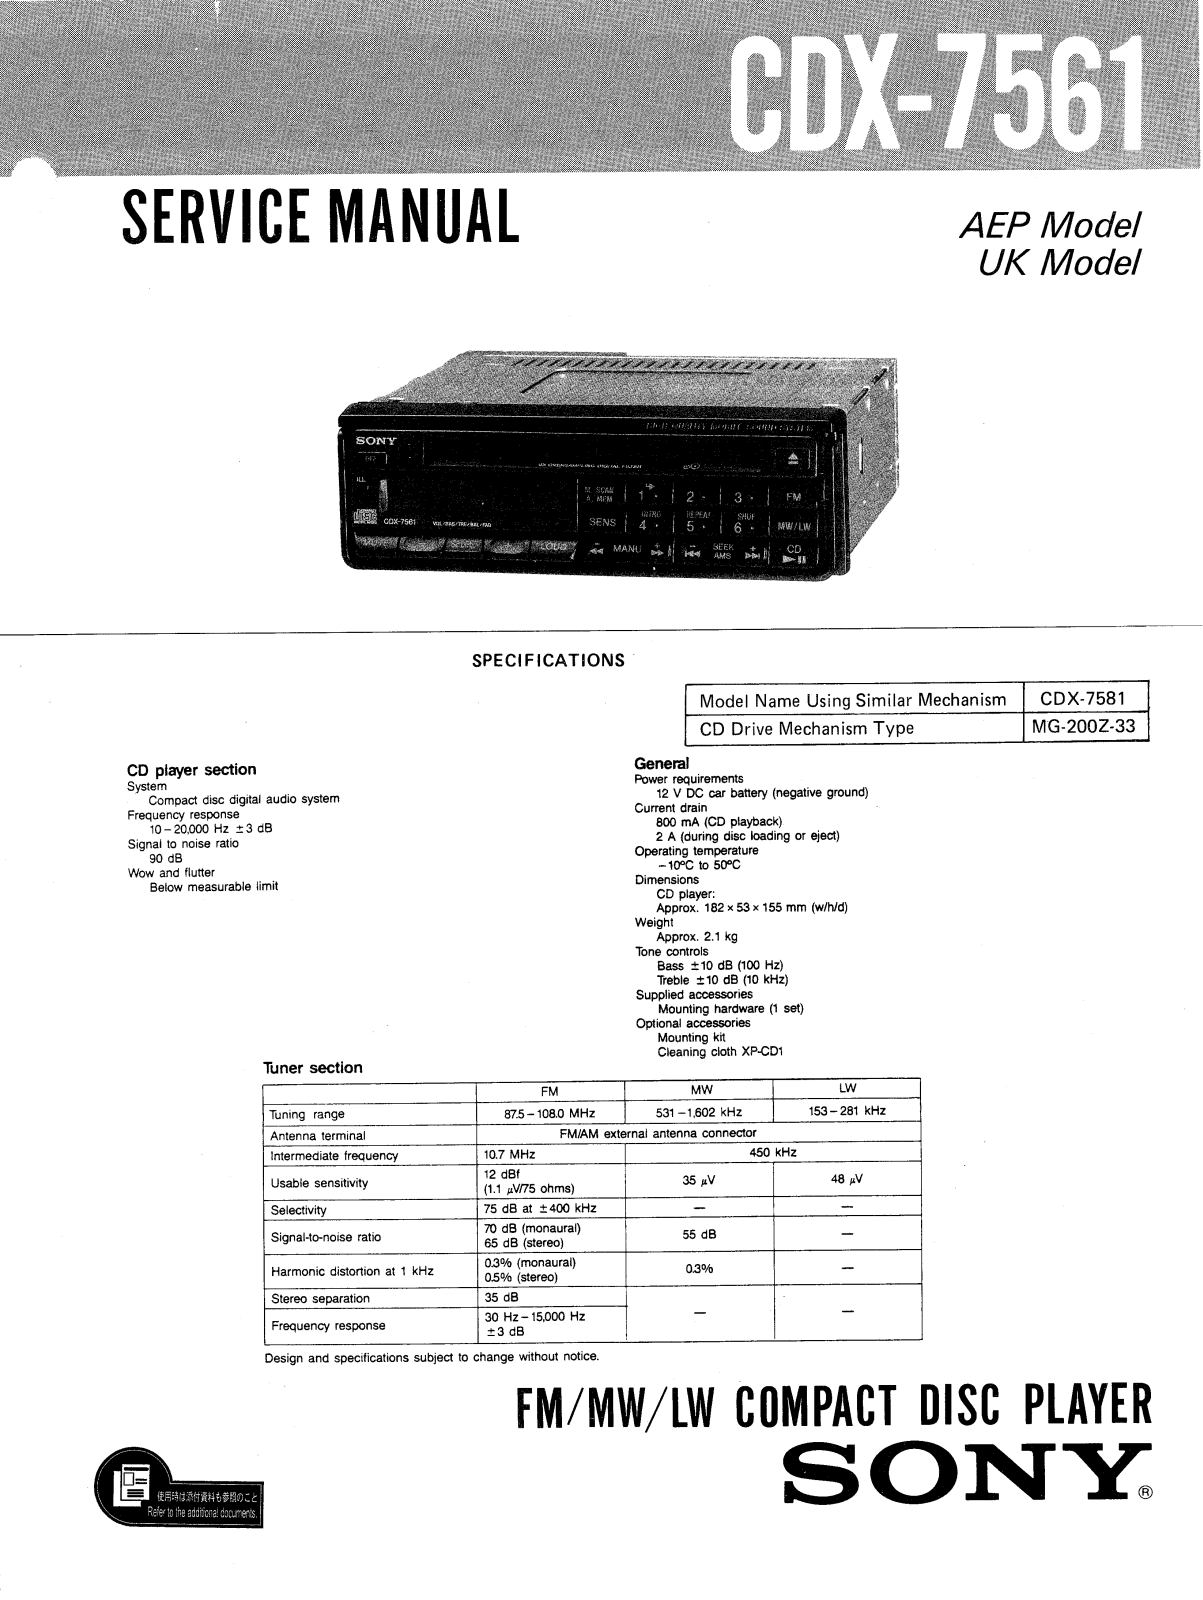 Sony CDX-7561 Service manual